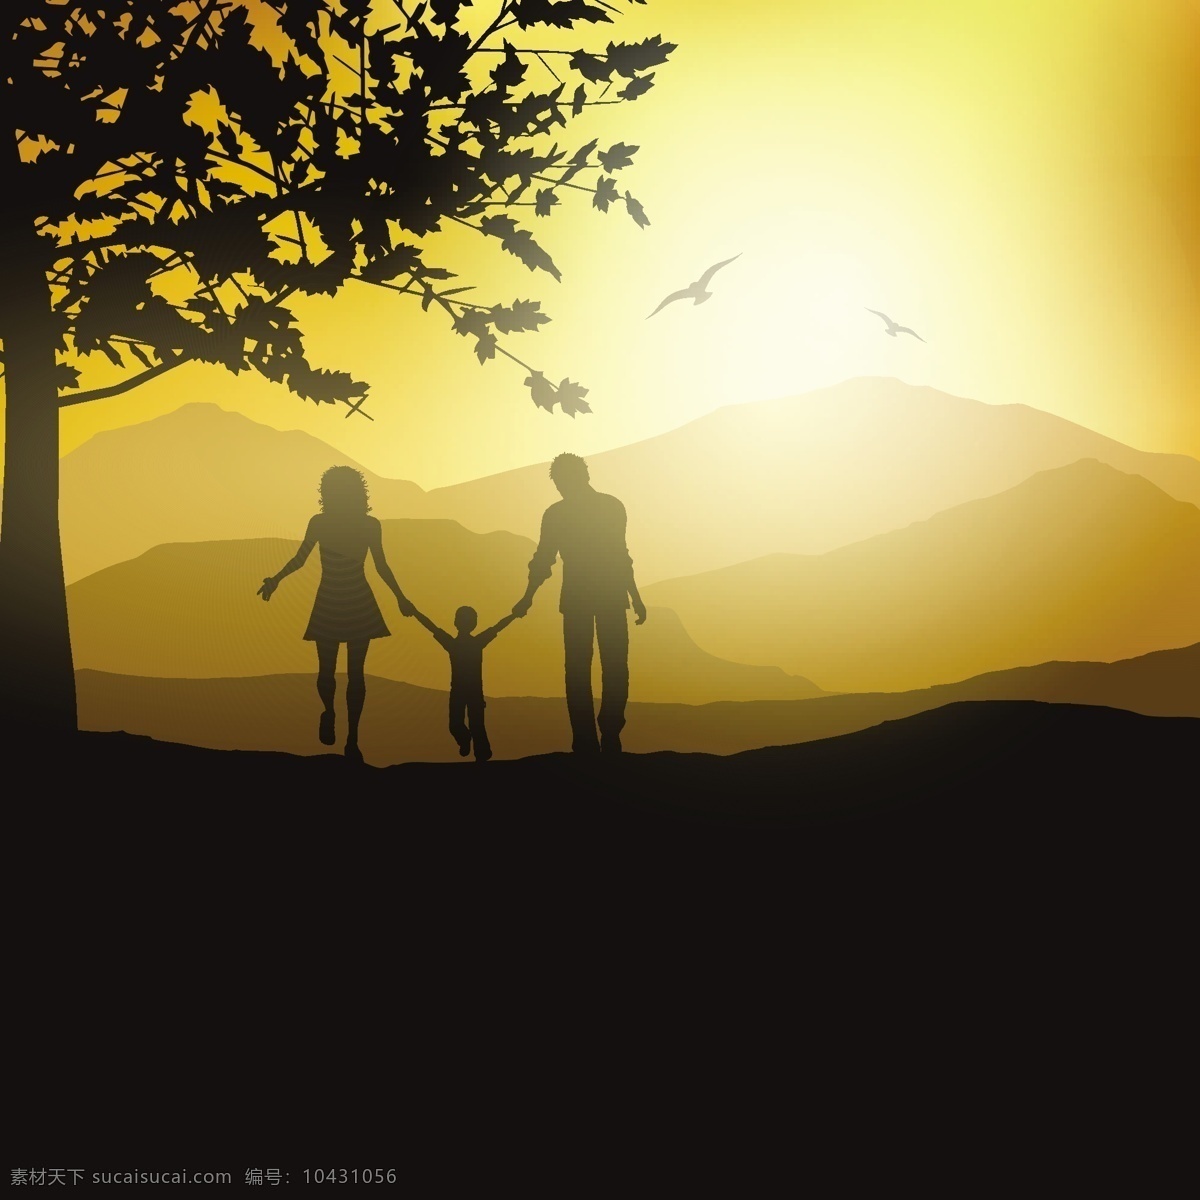 一个 家庭 走 农村 剪影 背景 树木 天空 景观 母亲 孩子 夫妻 父亲 日落 爸爸 散步 女性 关系 妈妈 儿子